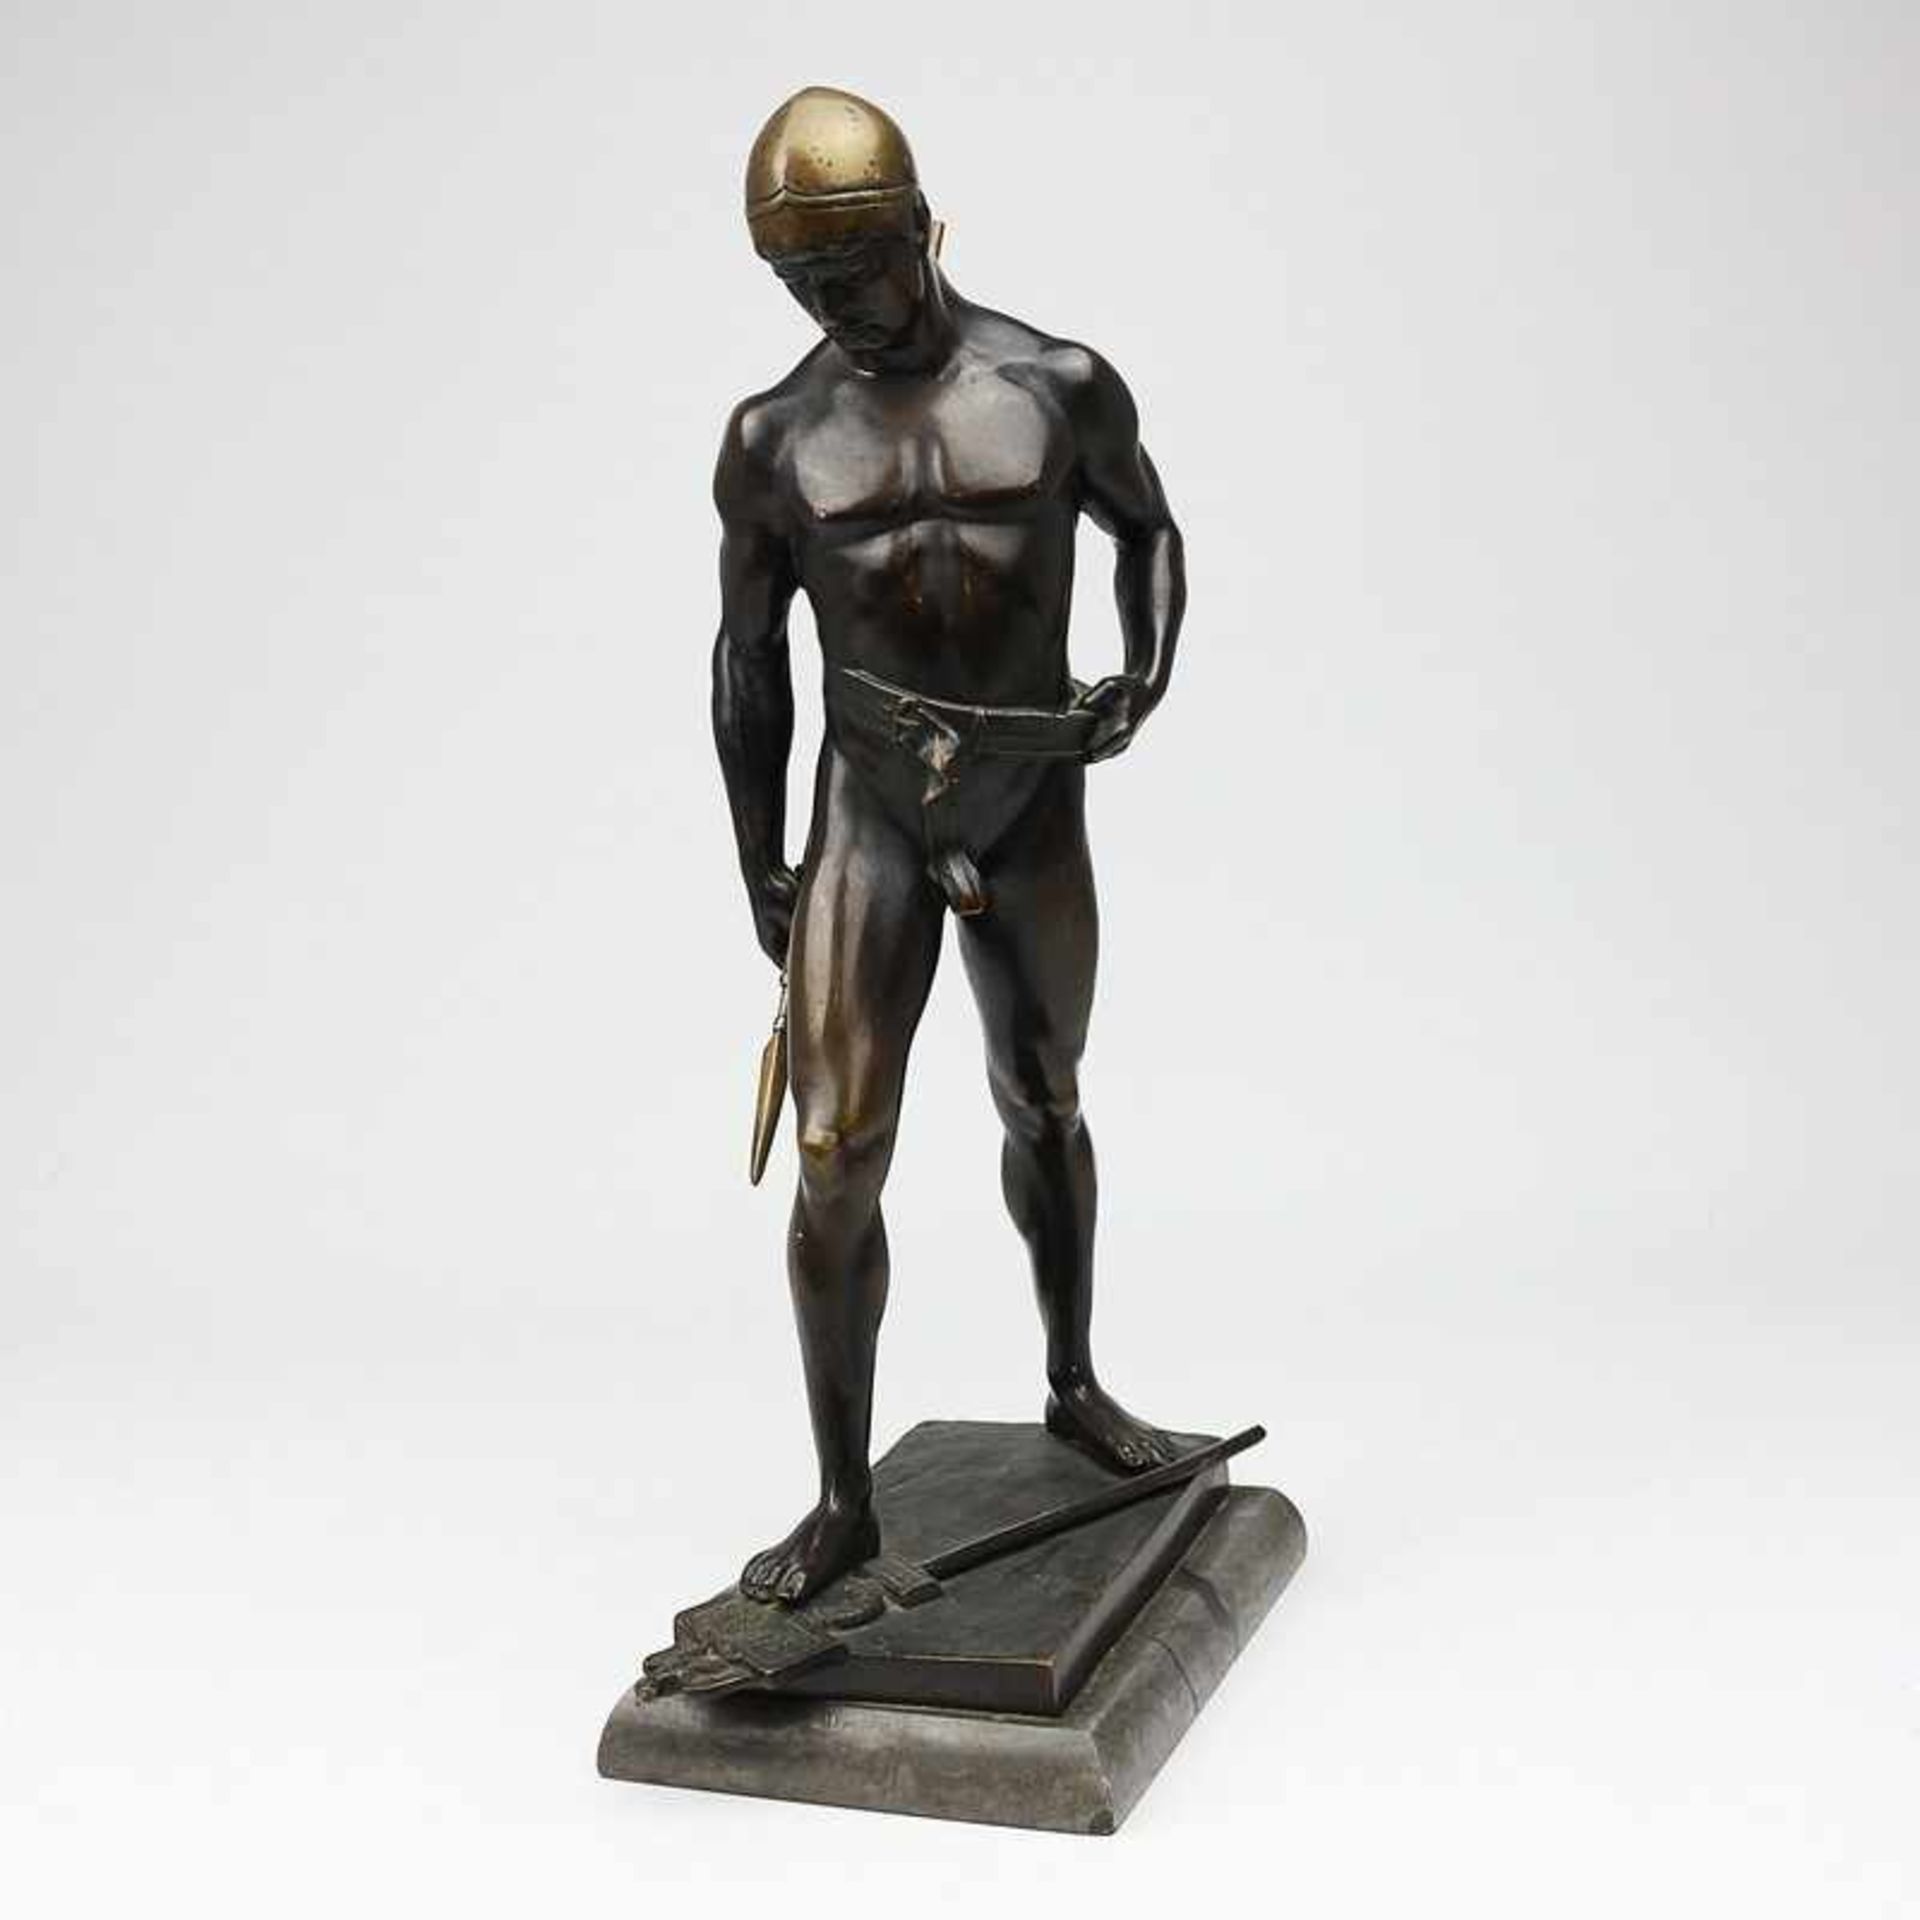 Eisenberger, Ludwig tätig 1895-1920, Bronze, patiniert, "Triumphierender Gallier", vollplastische